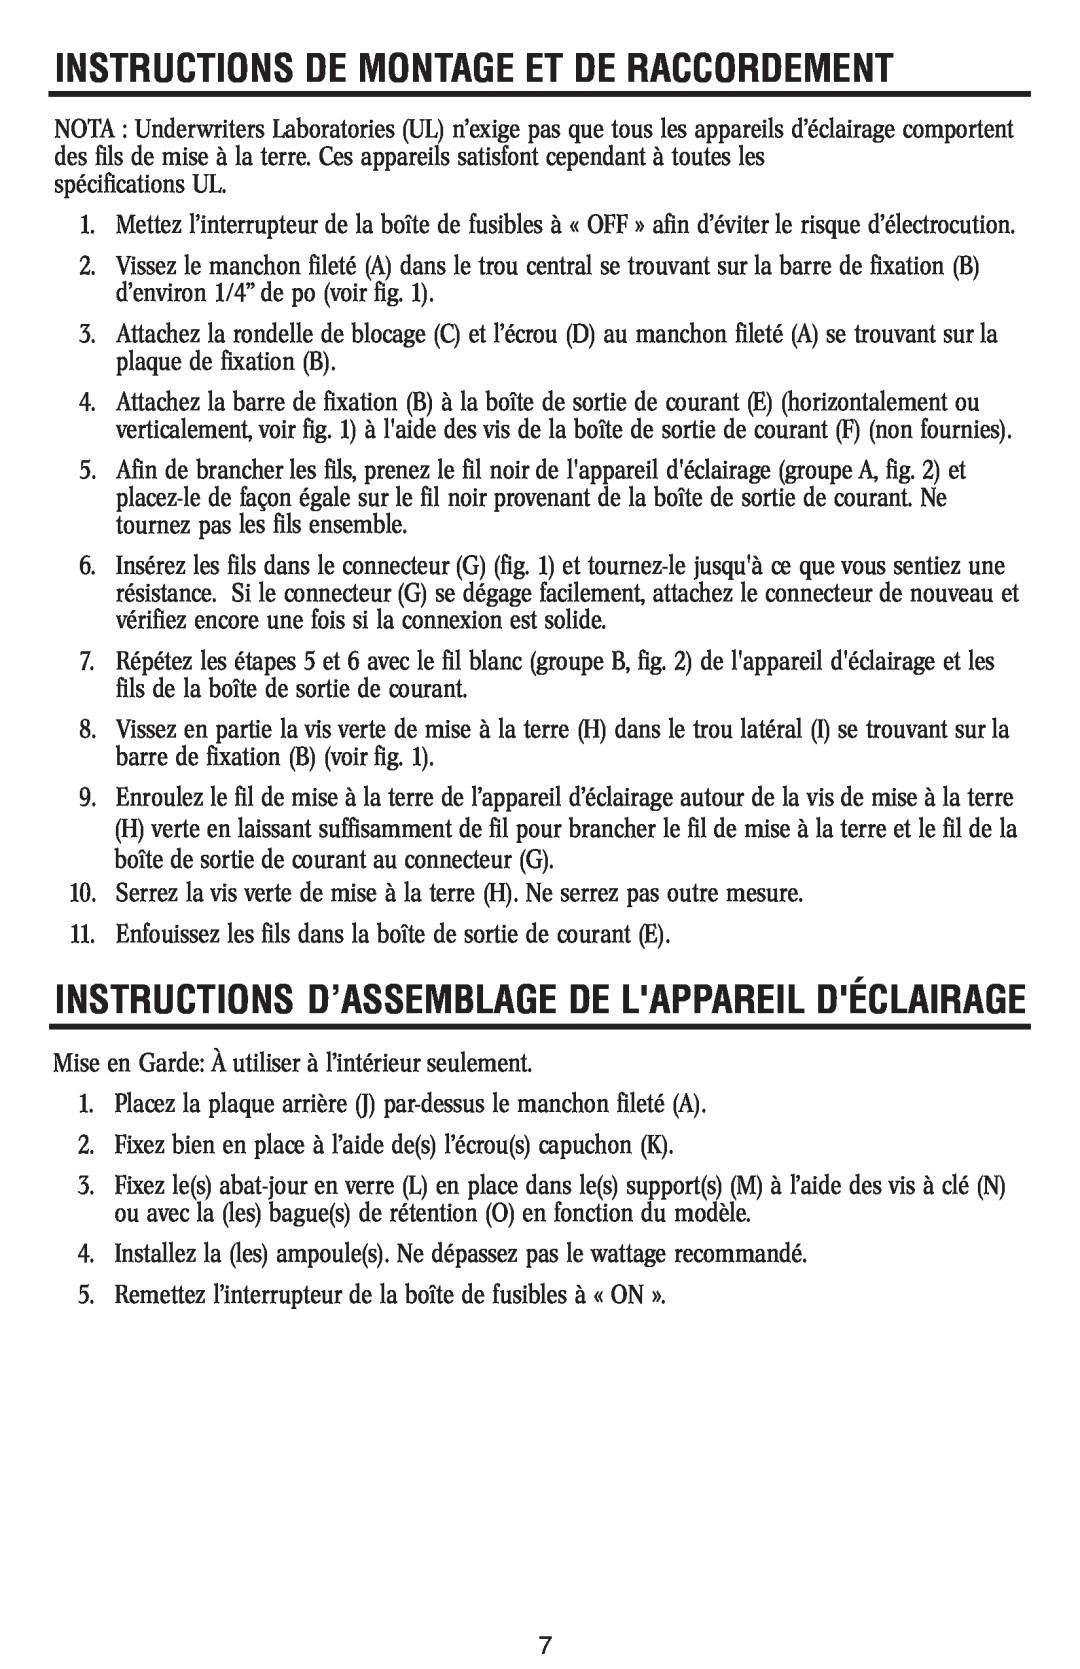 Westinghouse W-045 Instructions D’Assemblage De Lappareil Déclairage, Instructions De Montage Et De Raccordement 